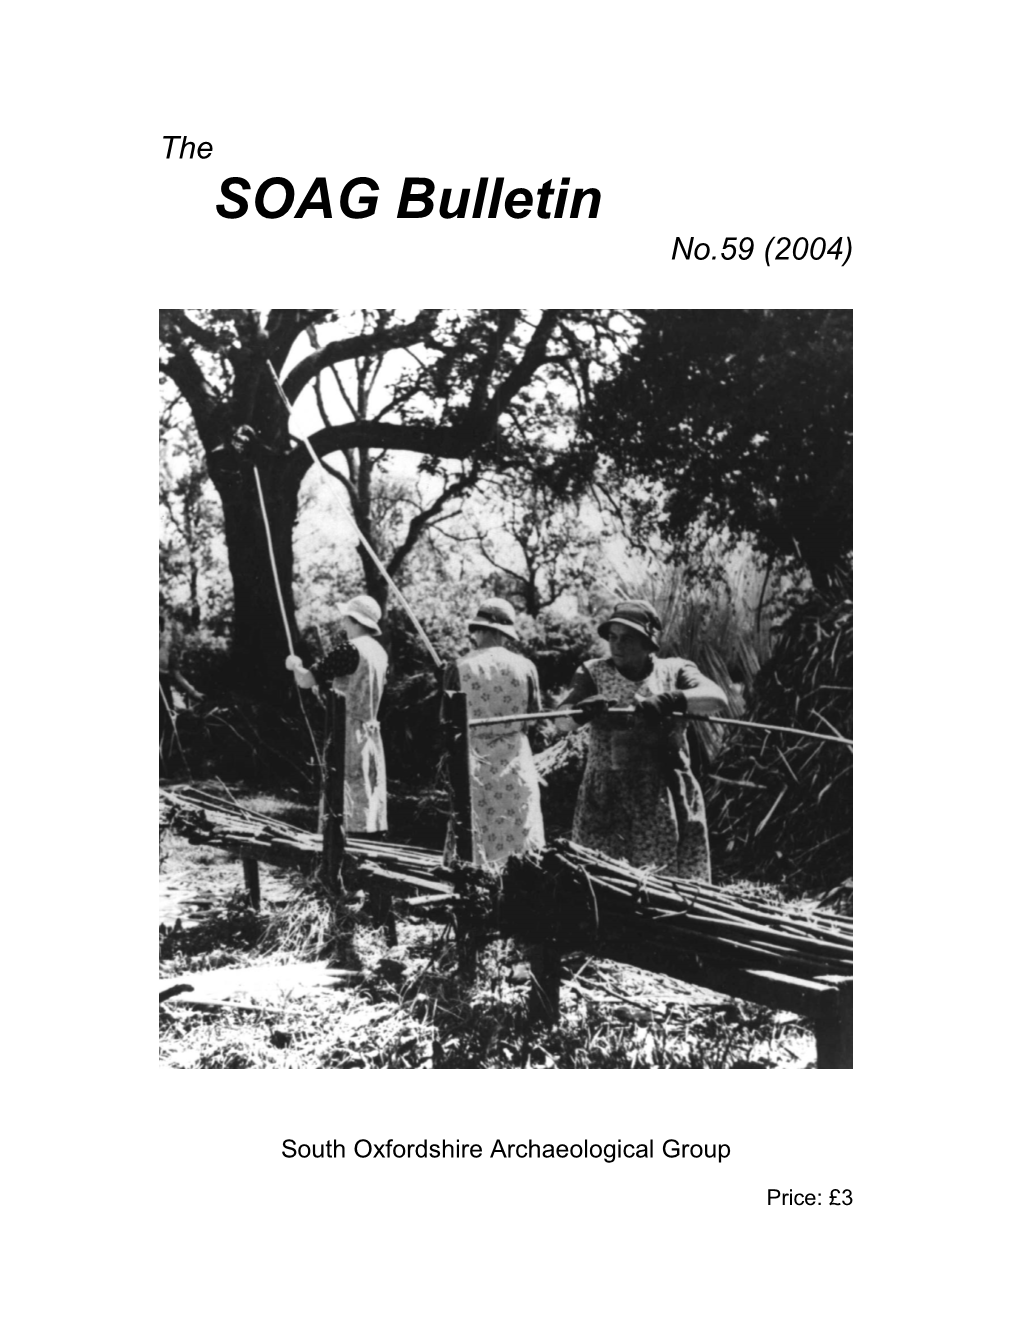 SOAG Bulletin 59